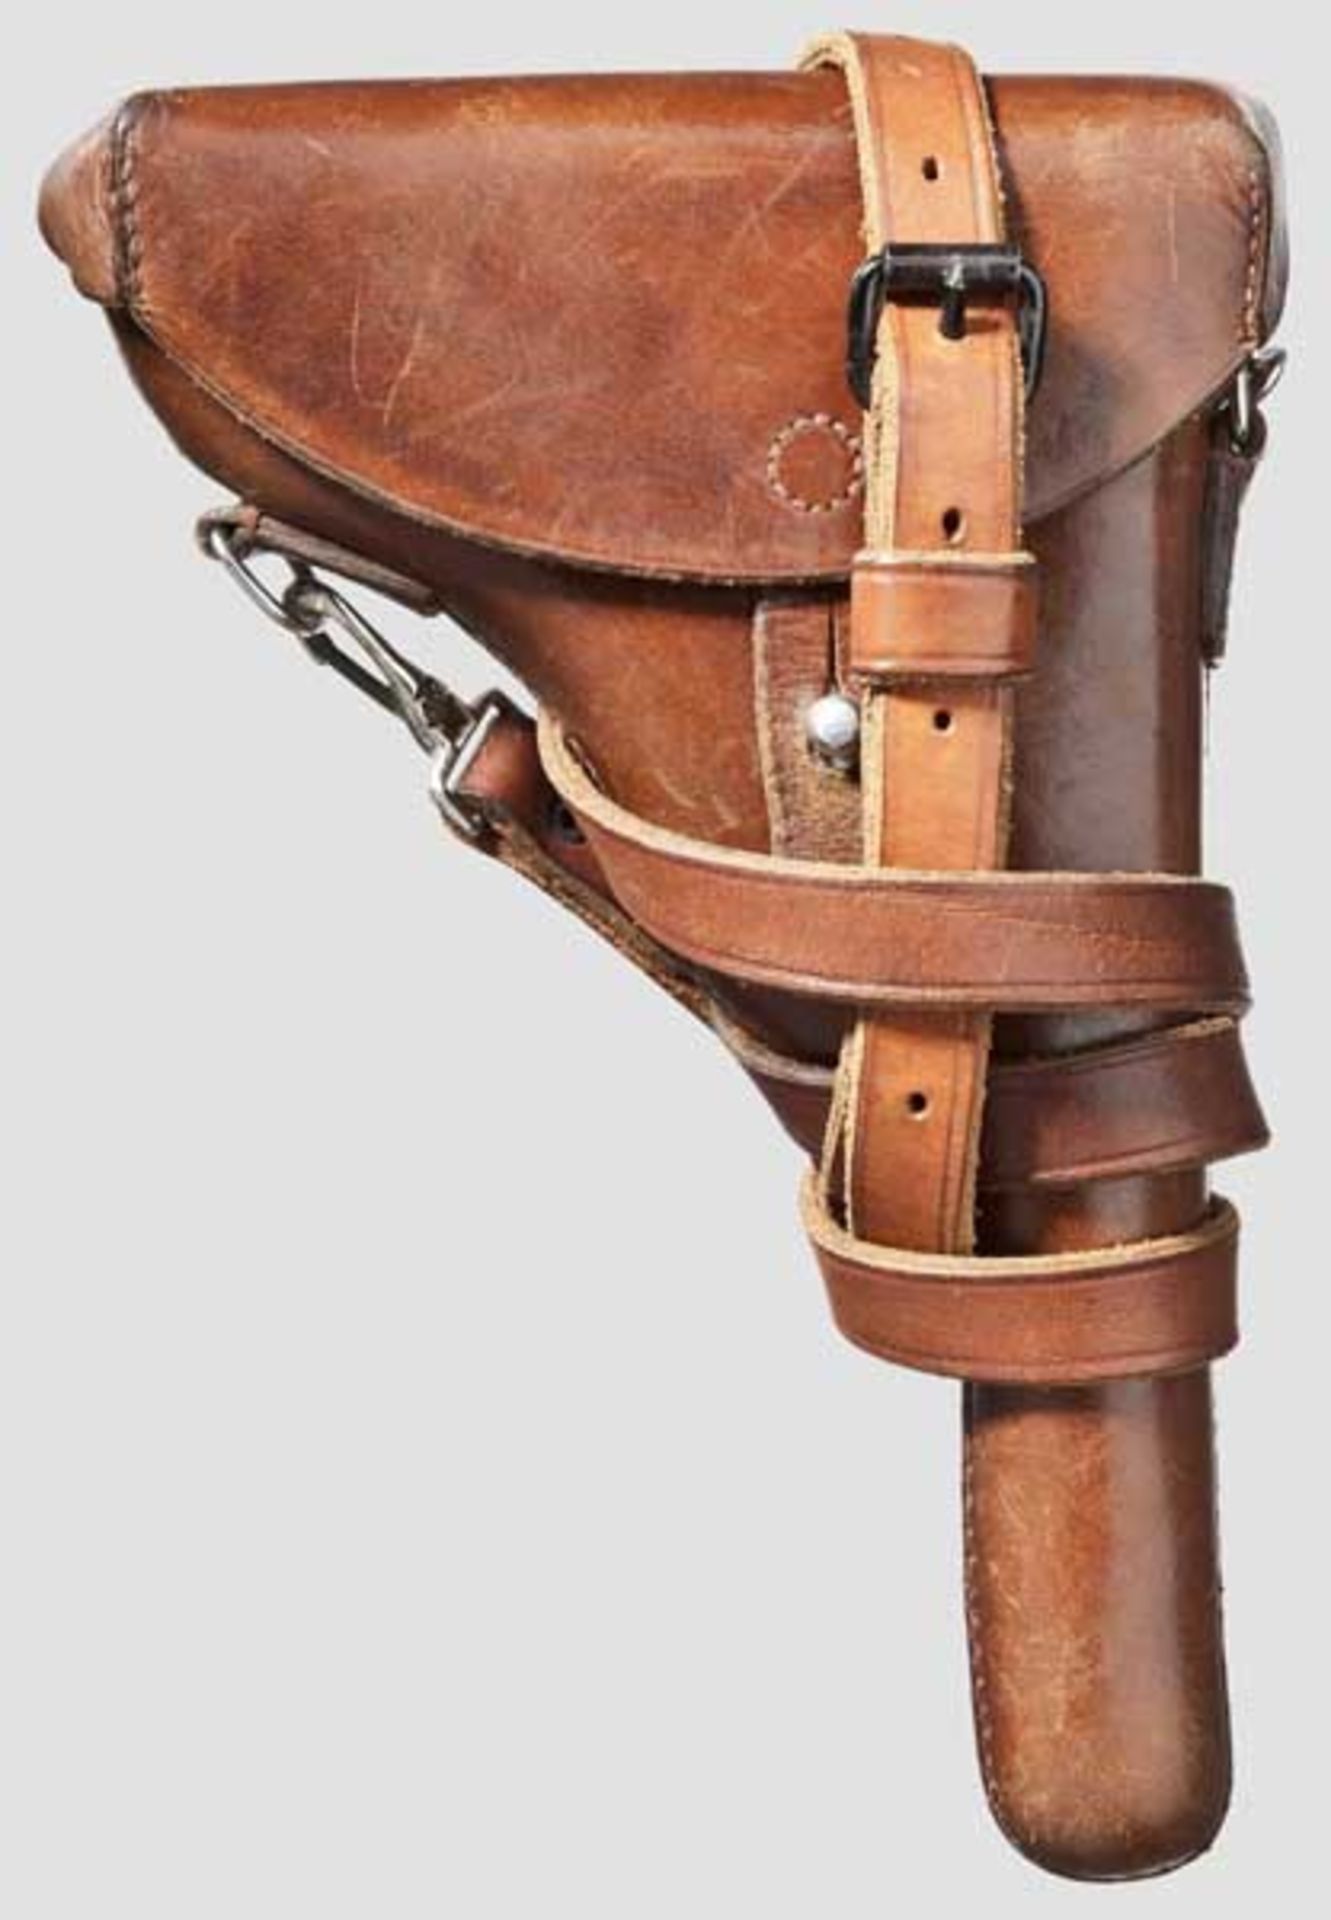 Parabellum Mod. 1906, CH-Commercial, mit Tasche Kal. 7,65 mm Para, Nr. 46885. Nummerngleich. Fast - Bild 4 aus 4